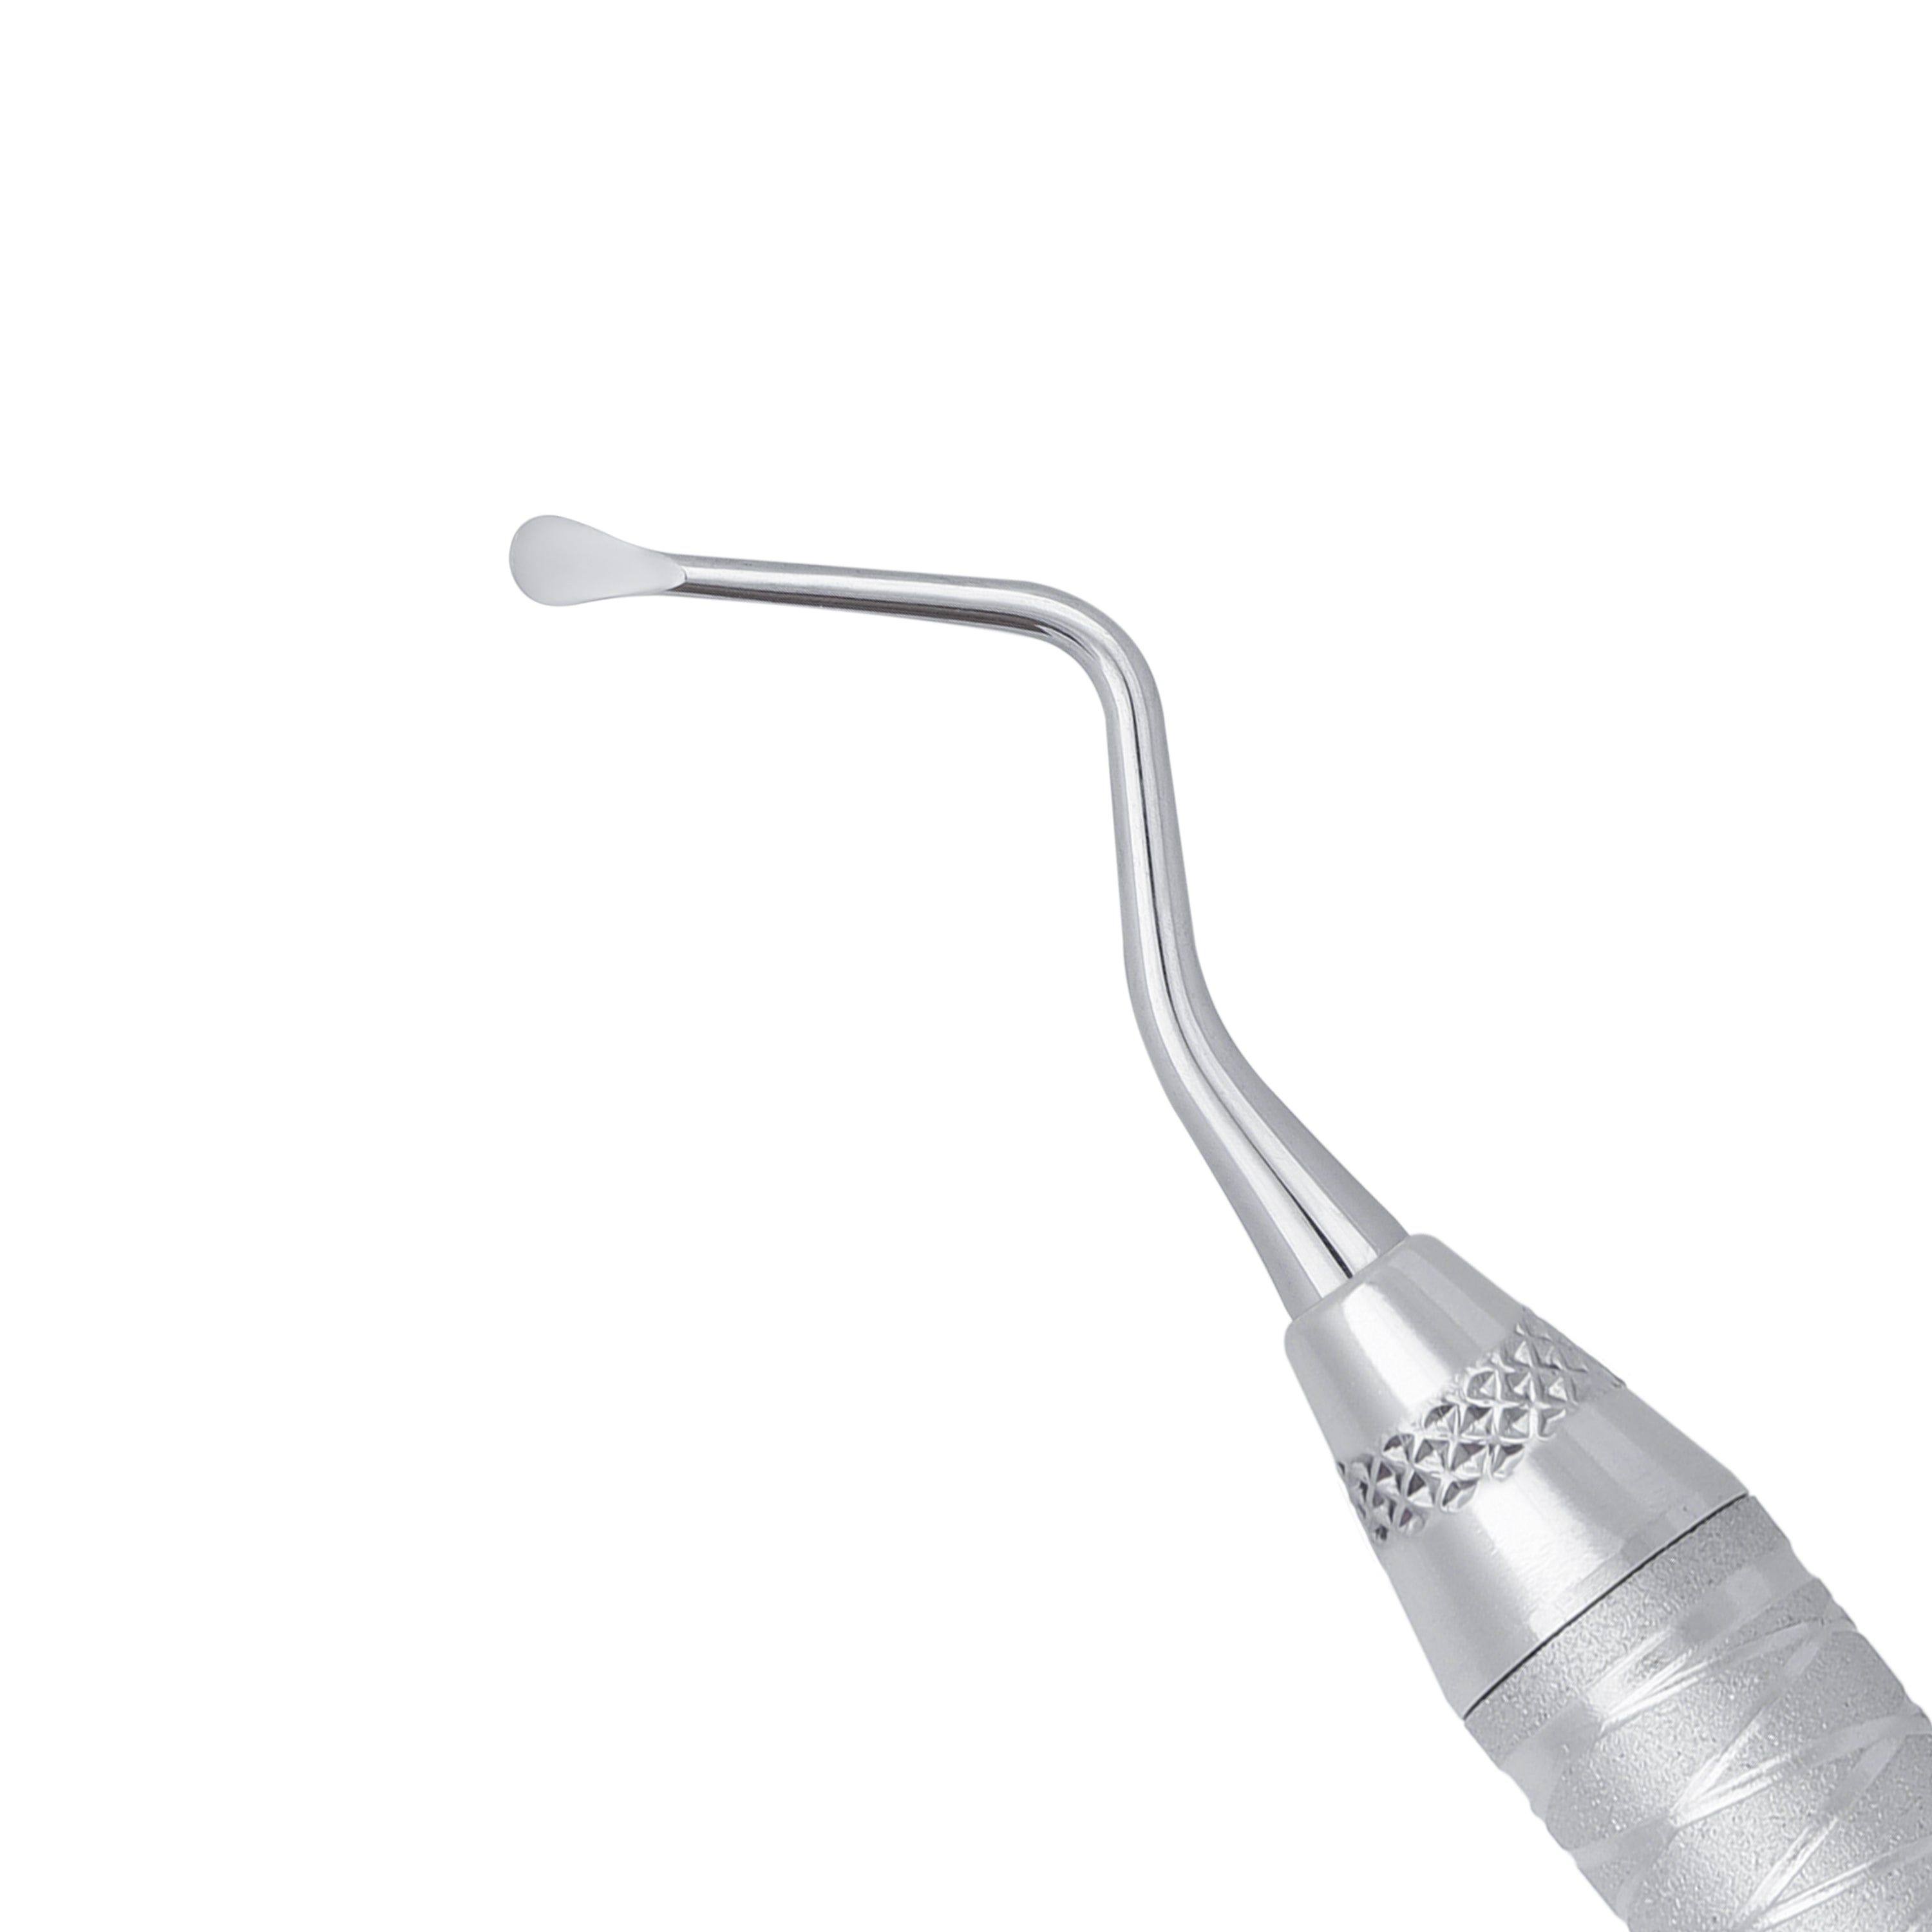 86 Lucas Spoon Shape Surgical Curette, 2.8MM - HiTeck Medical Instruments